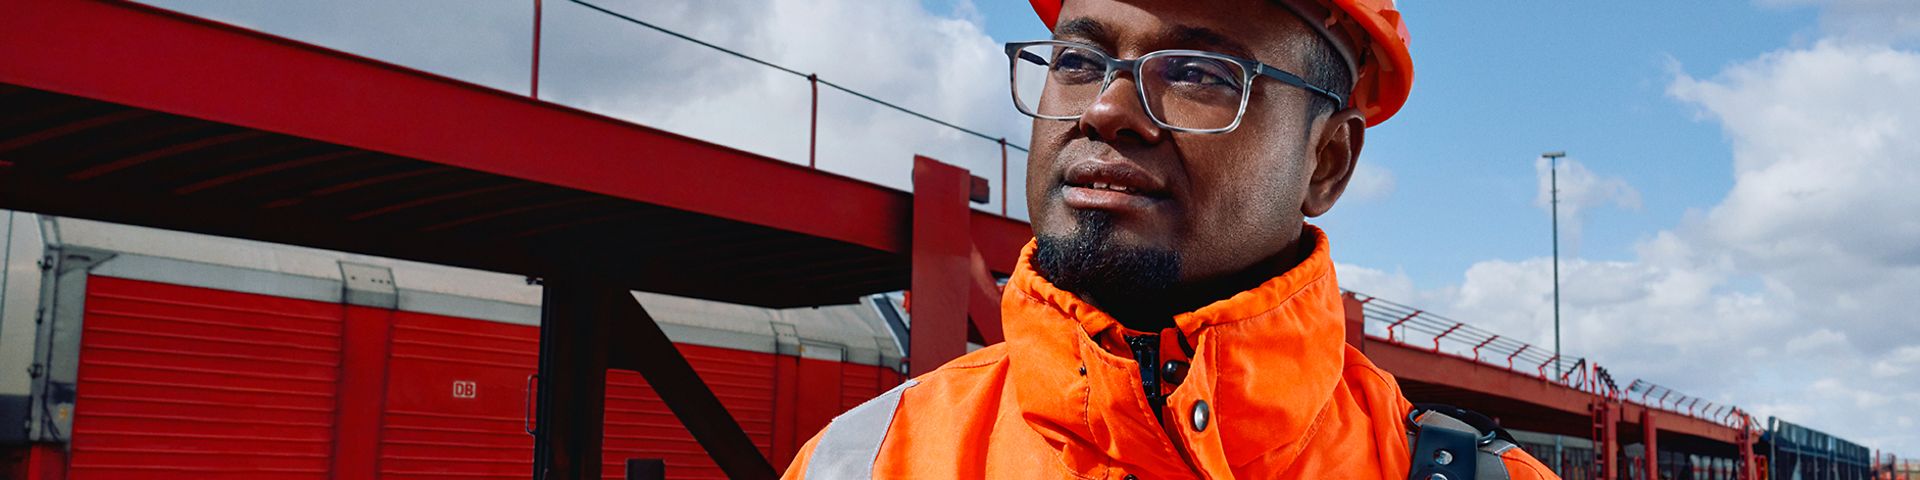 Ein Lokrangierführer in Warnweste und mit Schutzhelm steht vor Güterverkehrszügen